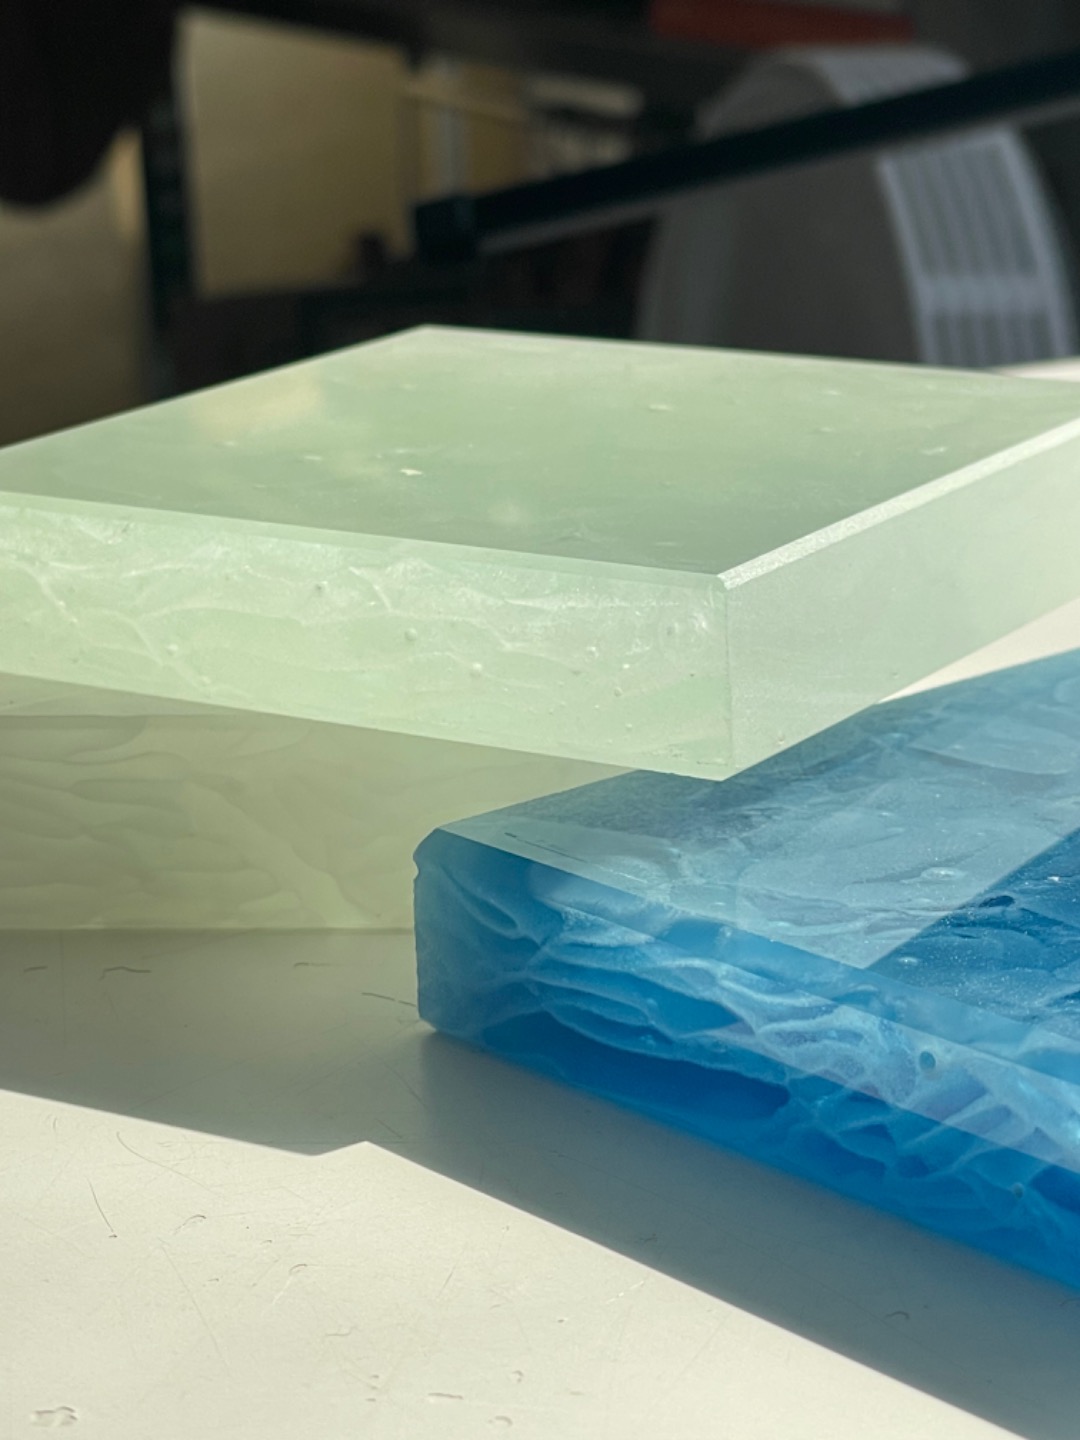 유리 폐기물 100%, 유리로 다시 재활용 할 수 있는 아름다운 유리 패널 글래스 세라믹과 활용 사례